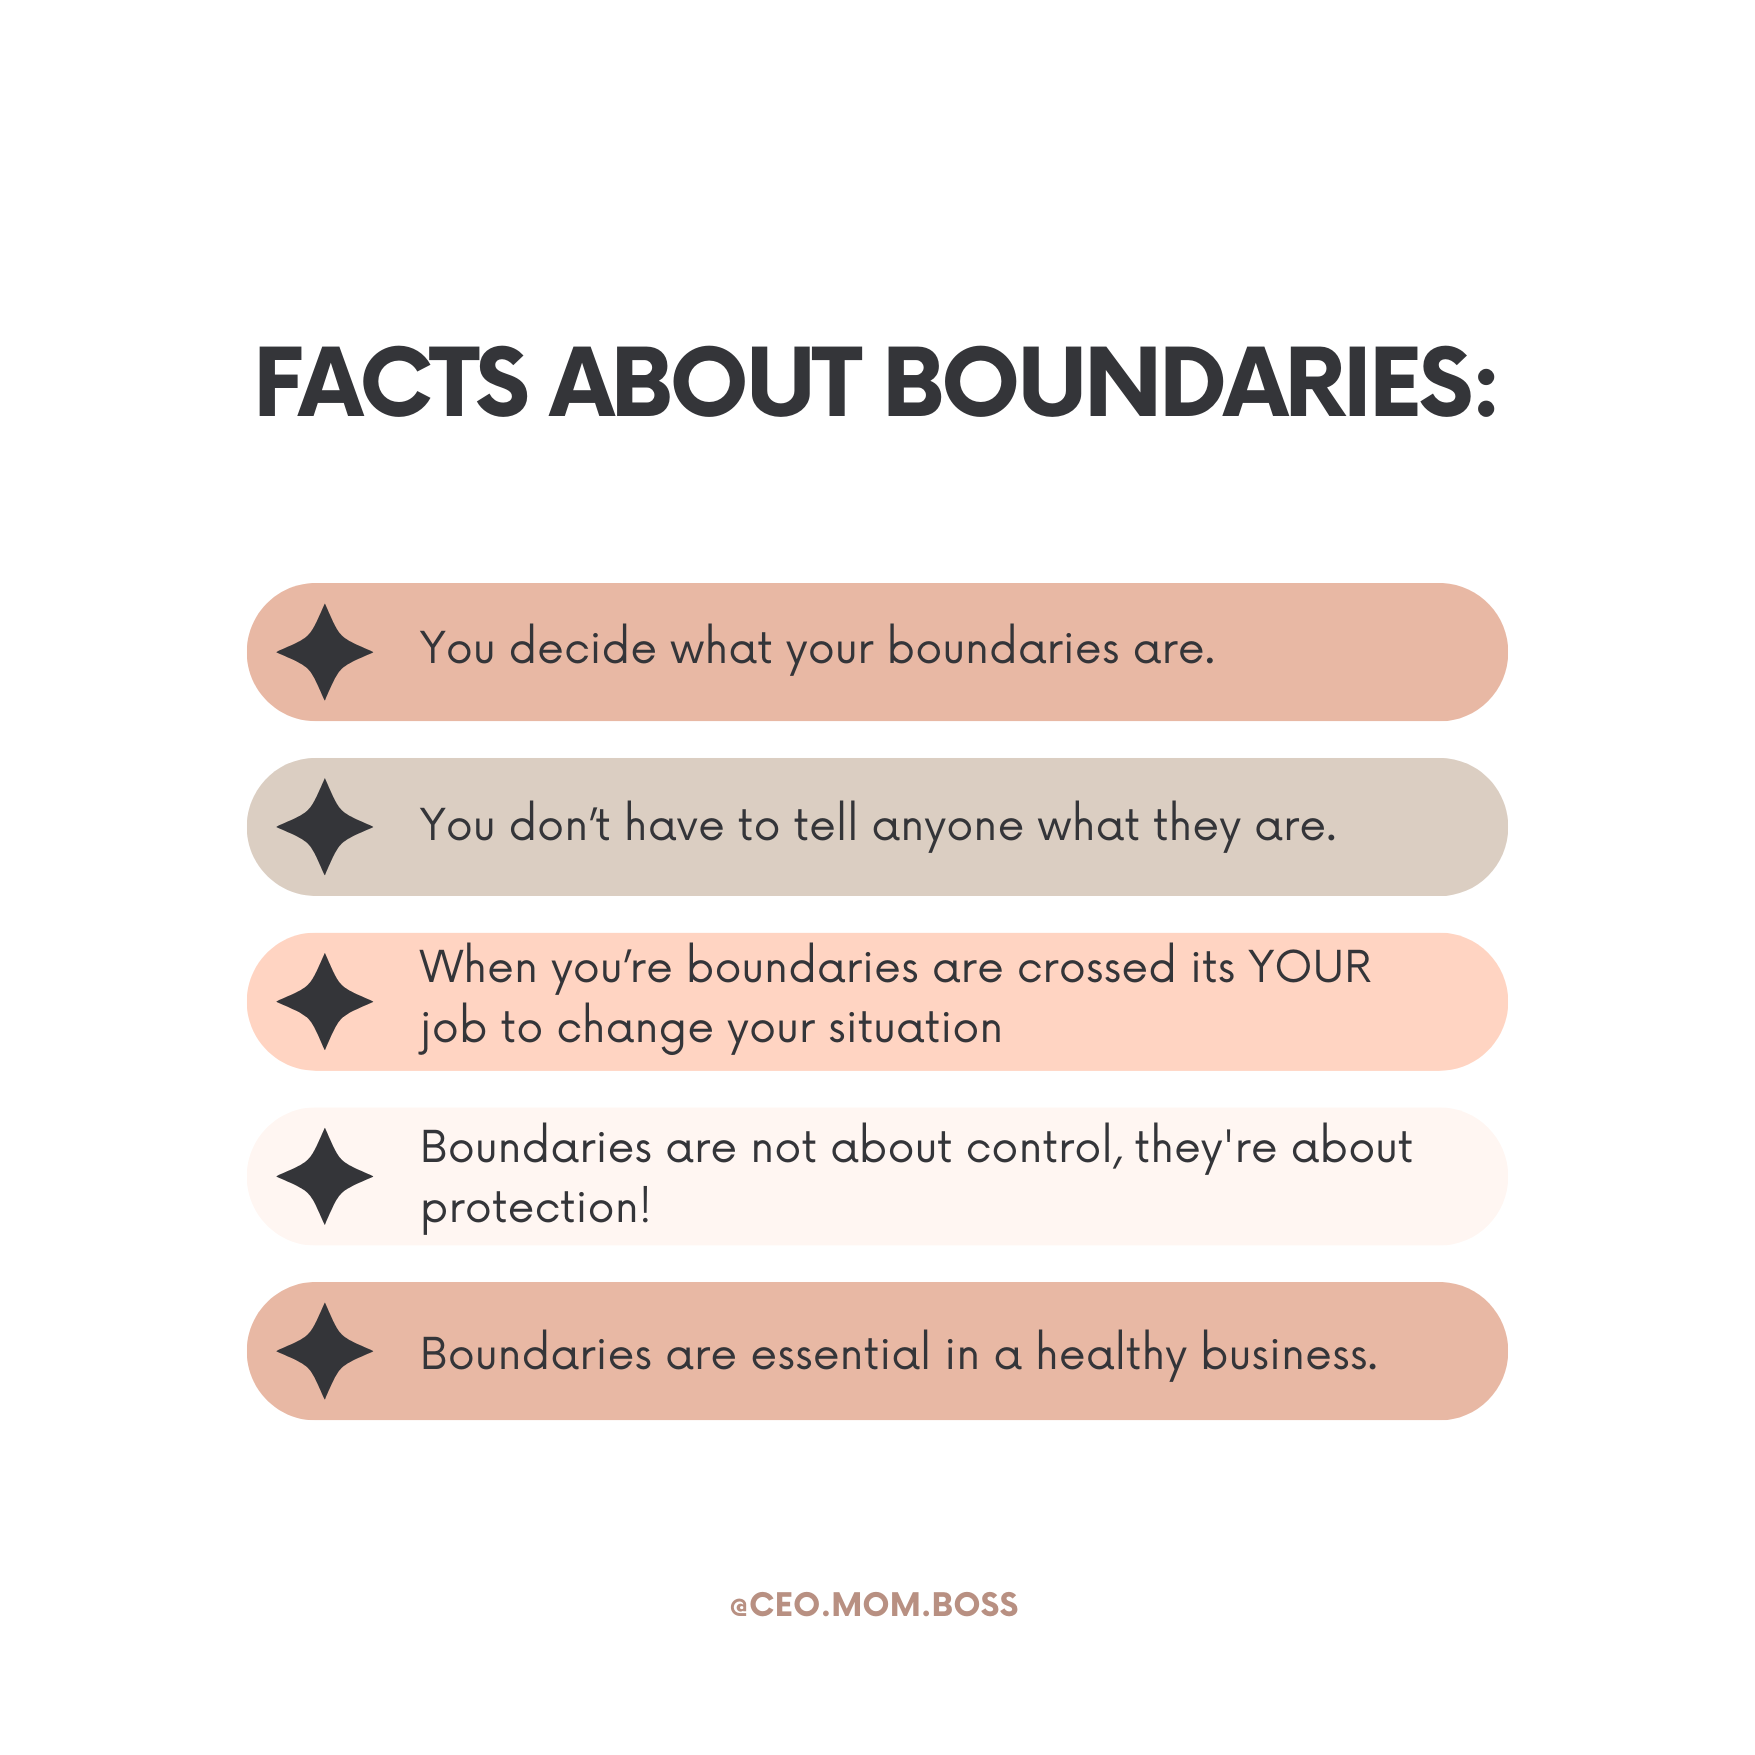 Boundaries in Business